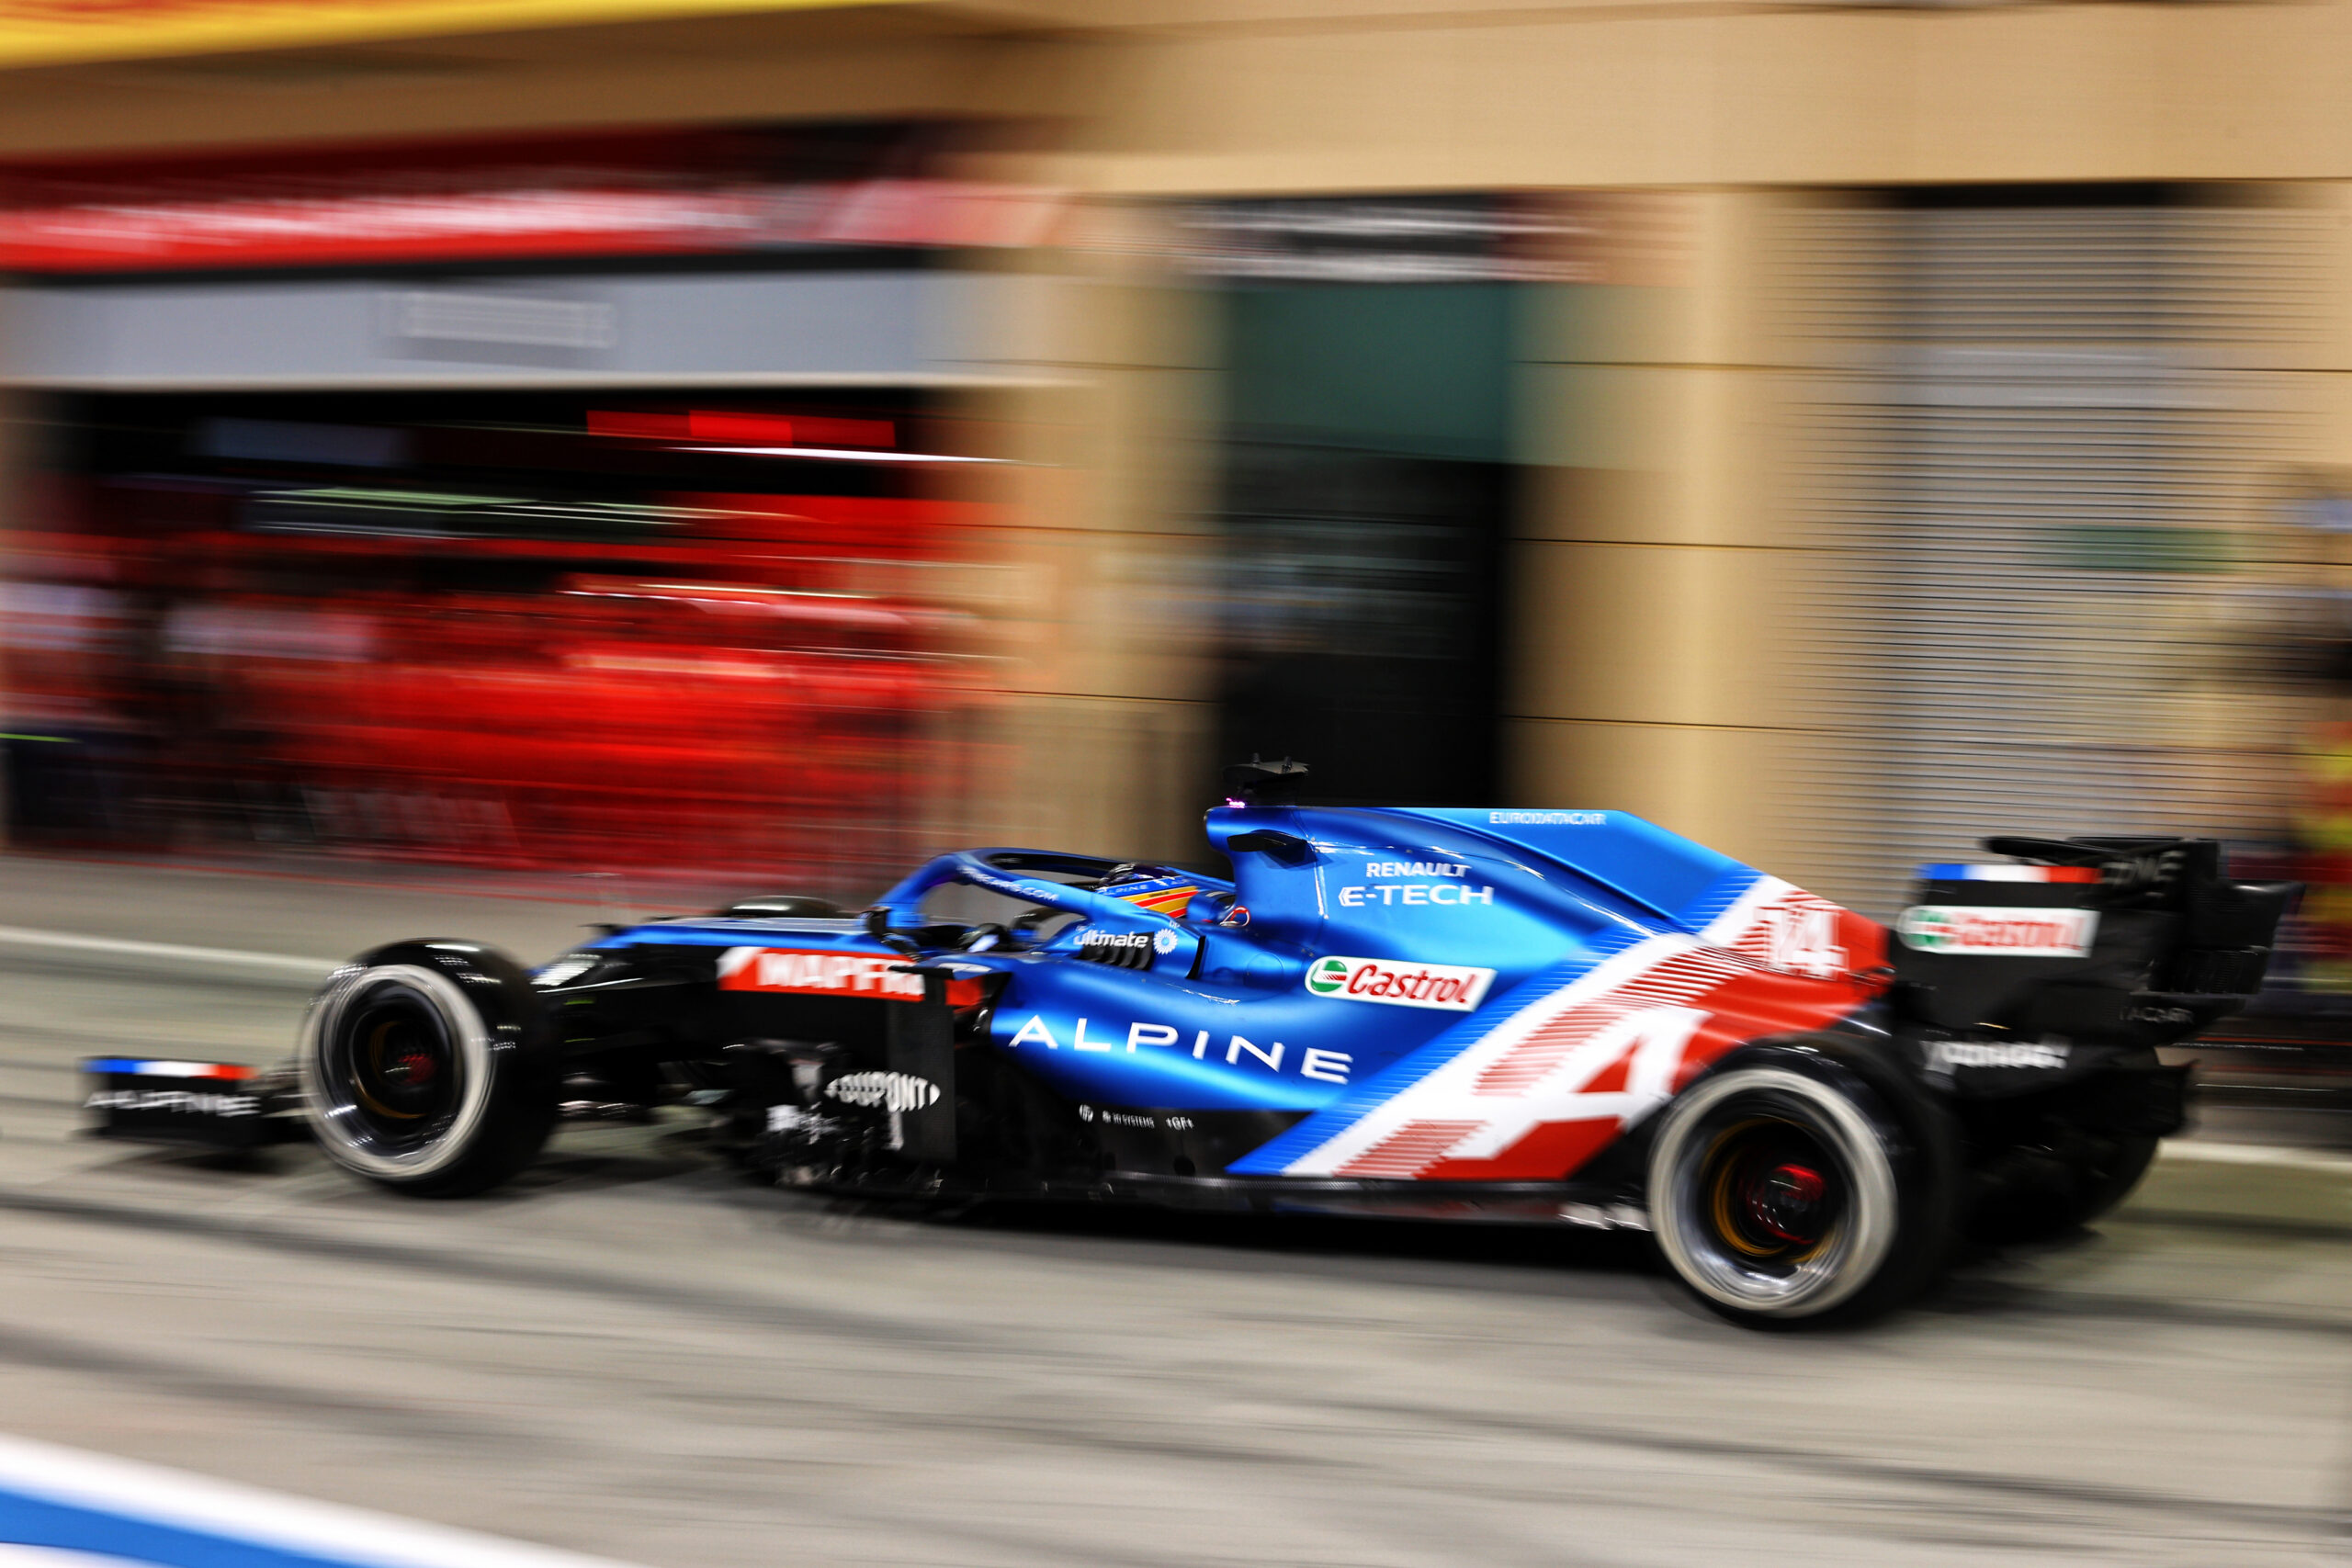 F1 - Alpine F1 bredouille au Grand Prix de Bahreïn